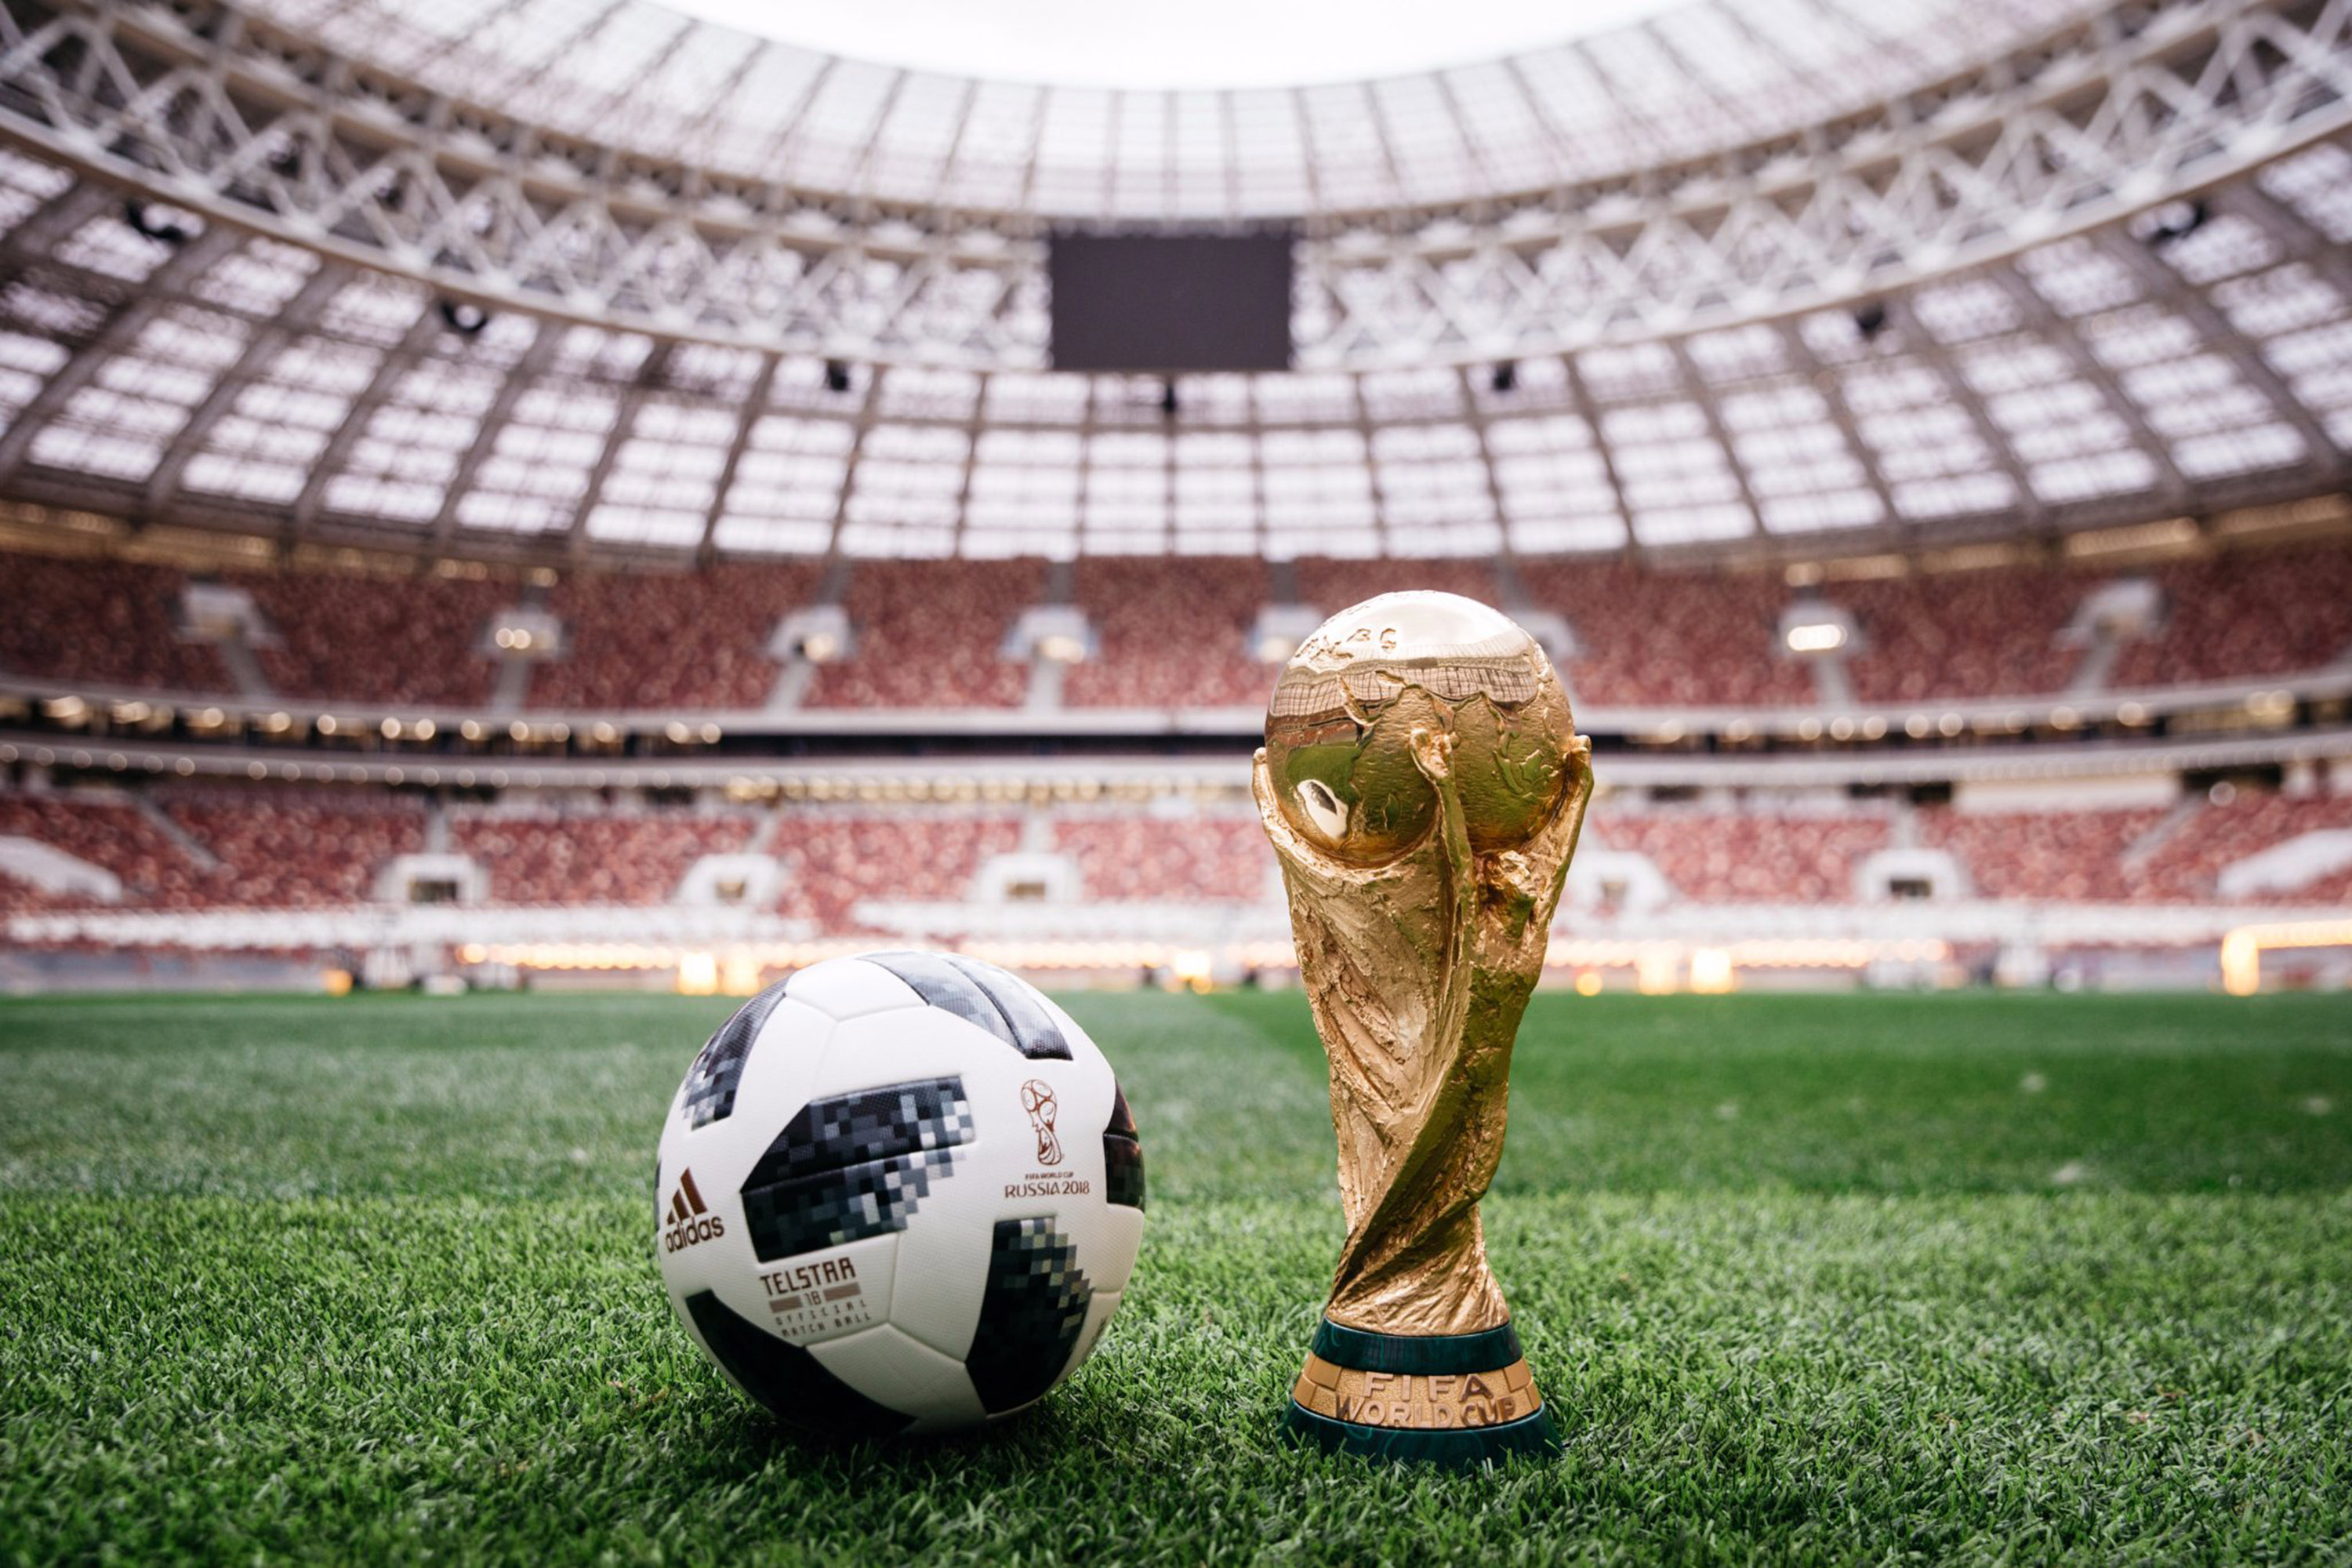 Com design retrô, Adidas apresenta bola da Copa de 2018